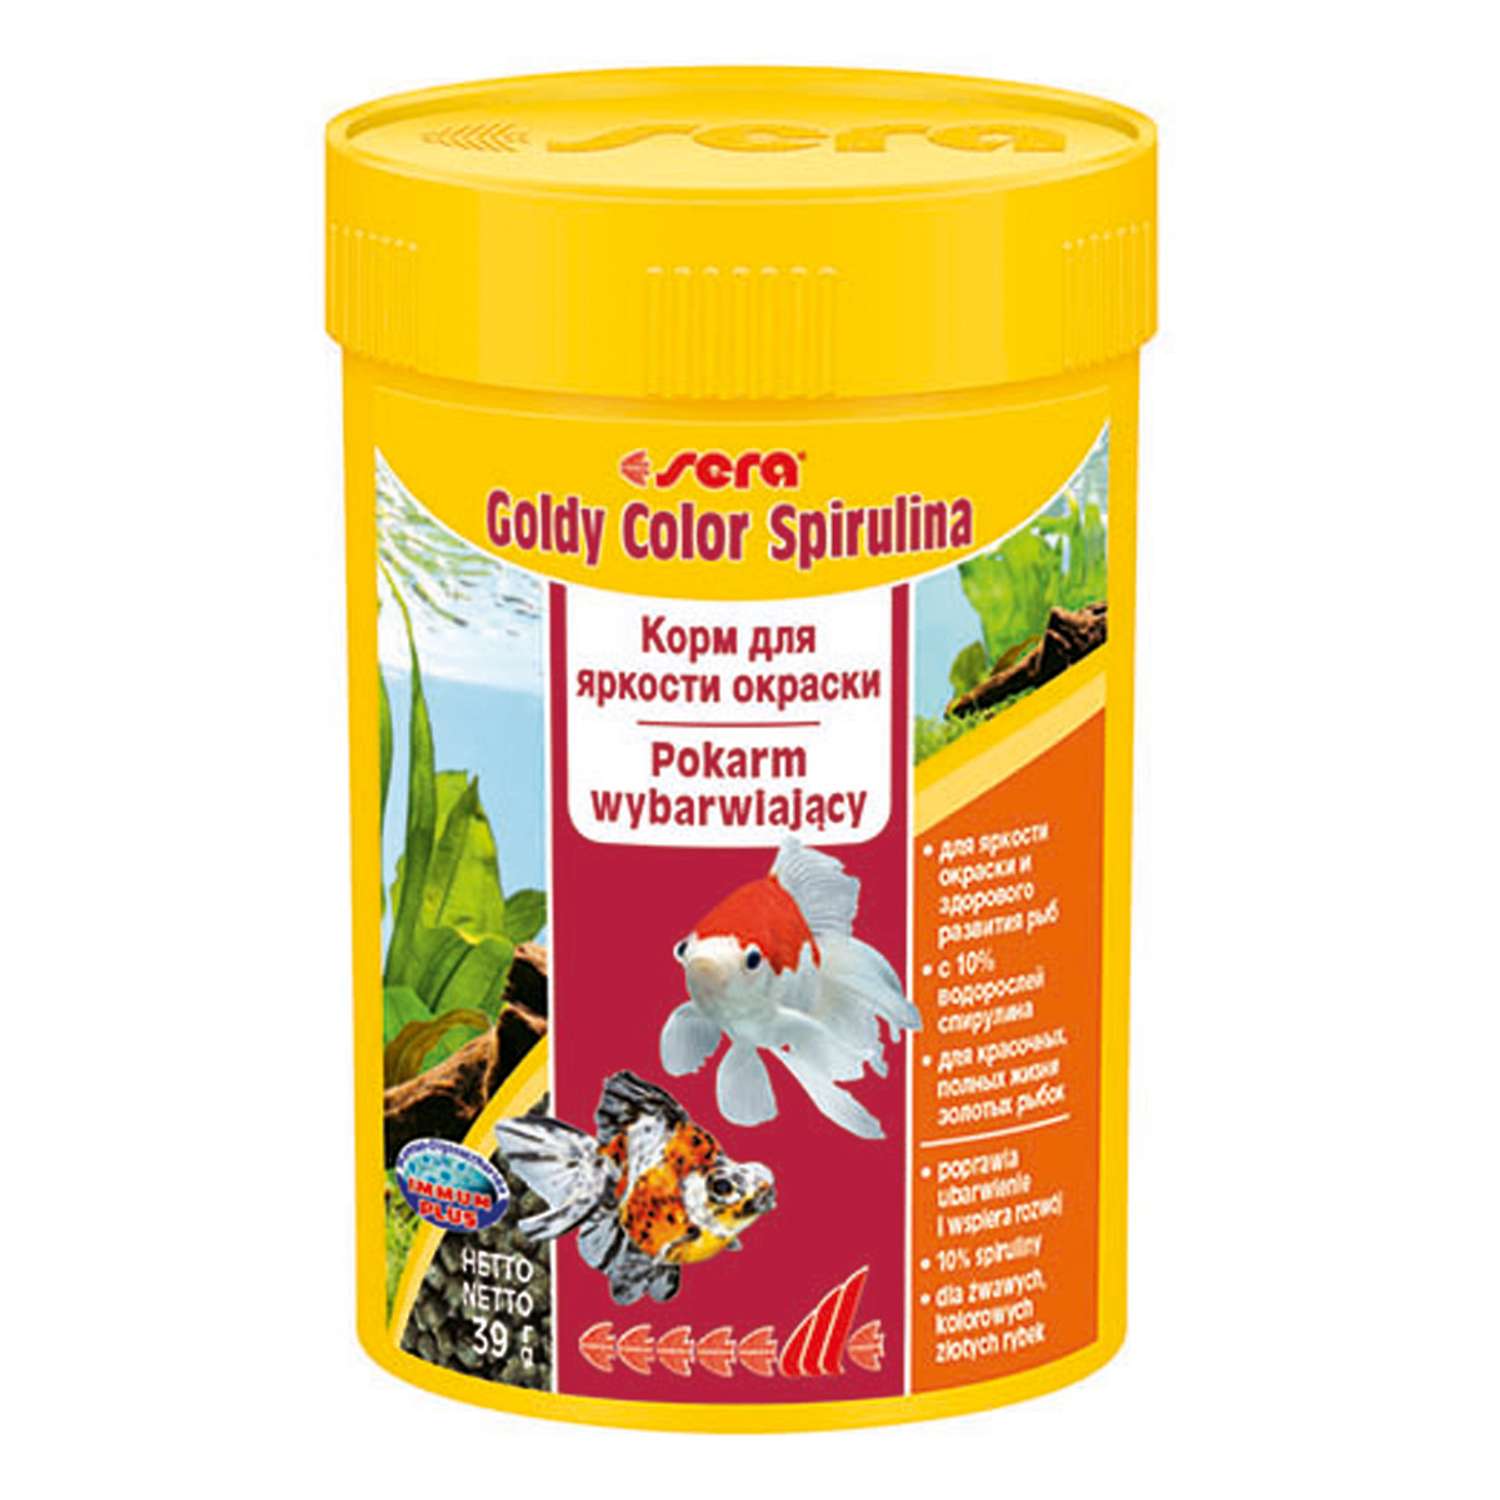 Корм для золотых рыб Sera Goldy color spirulina для улучшения окраса гранулы 39г - фото 1